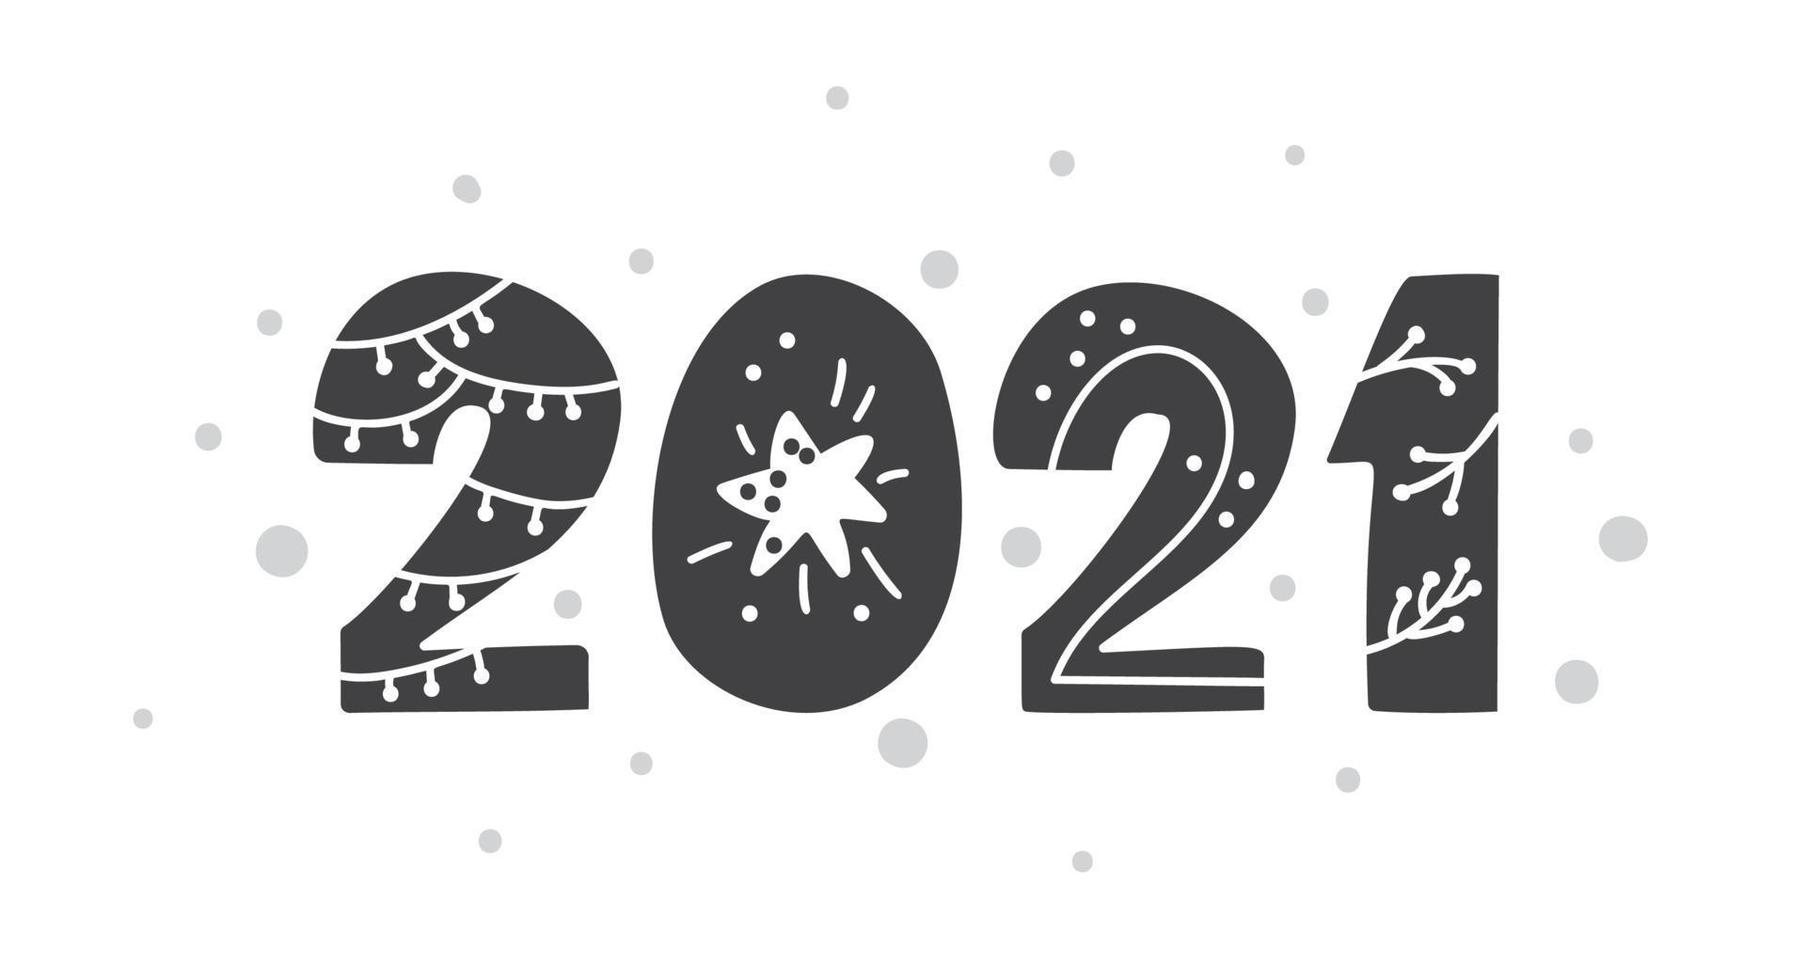 bonne année 2021 logo texte design style scandinave. couleur noir et blanc. décoration simple sur un style design plat. icône pour célébrer le nouvel an. vecteur